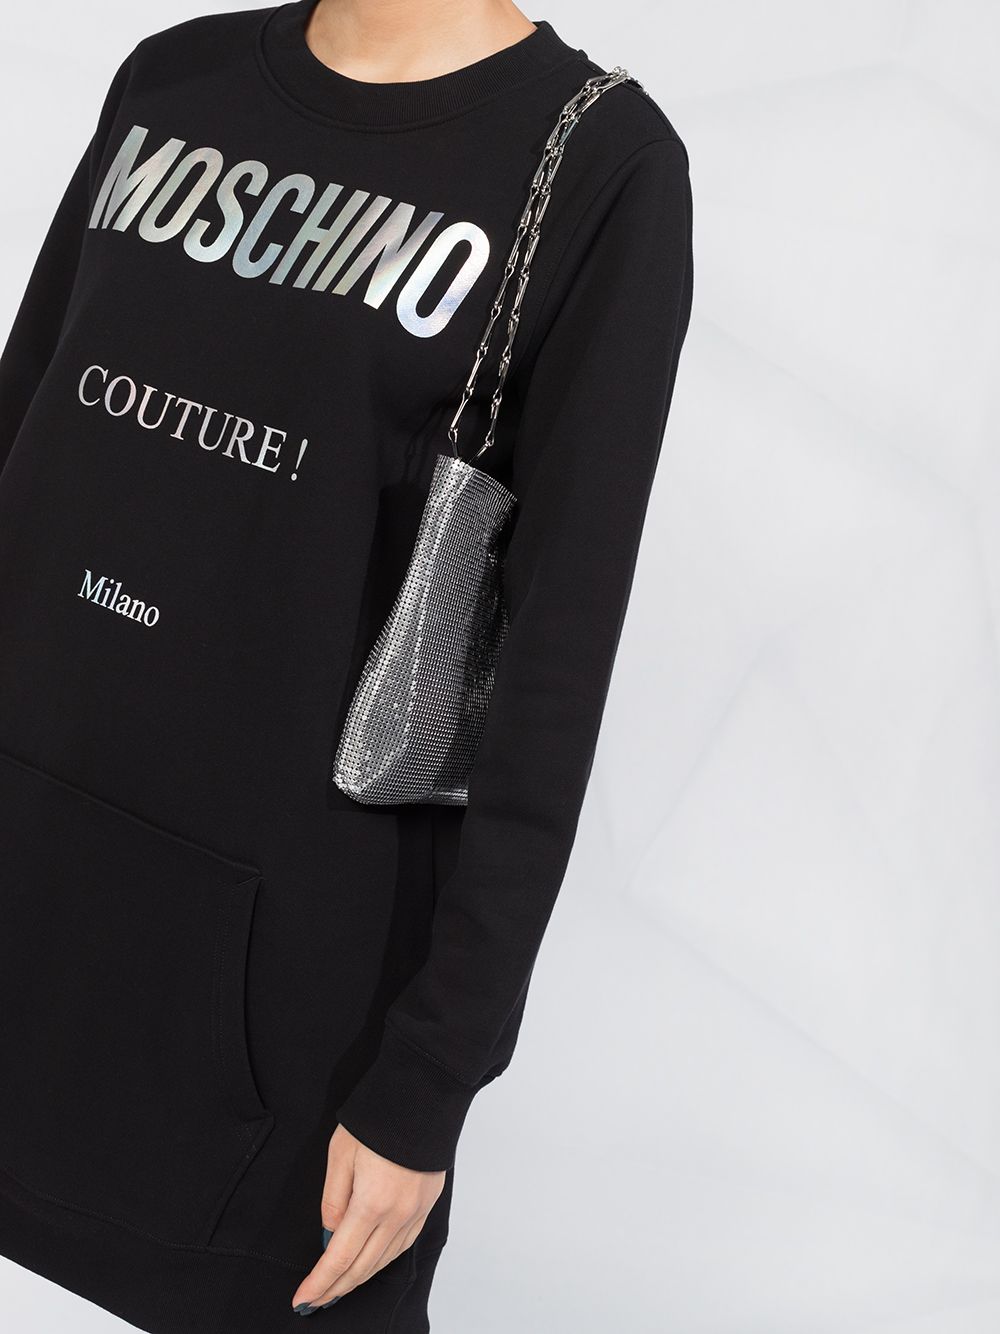 фото Moschino платье-толстовка с логотипом couture